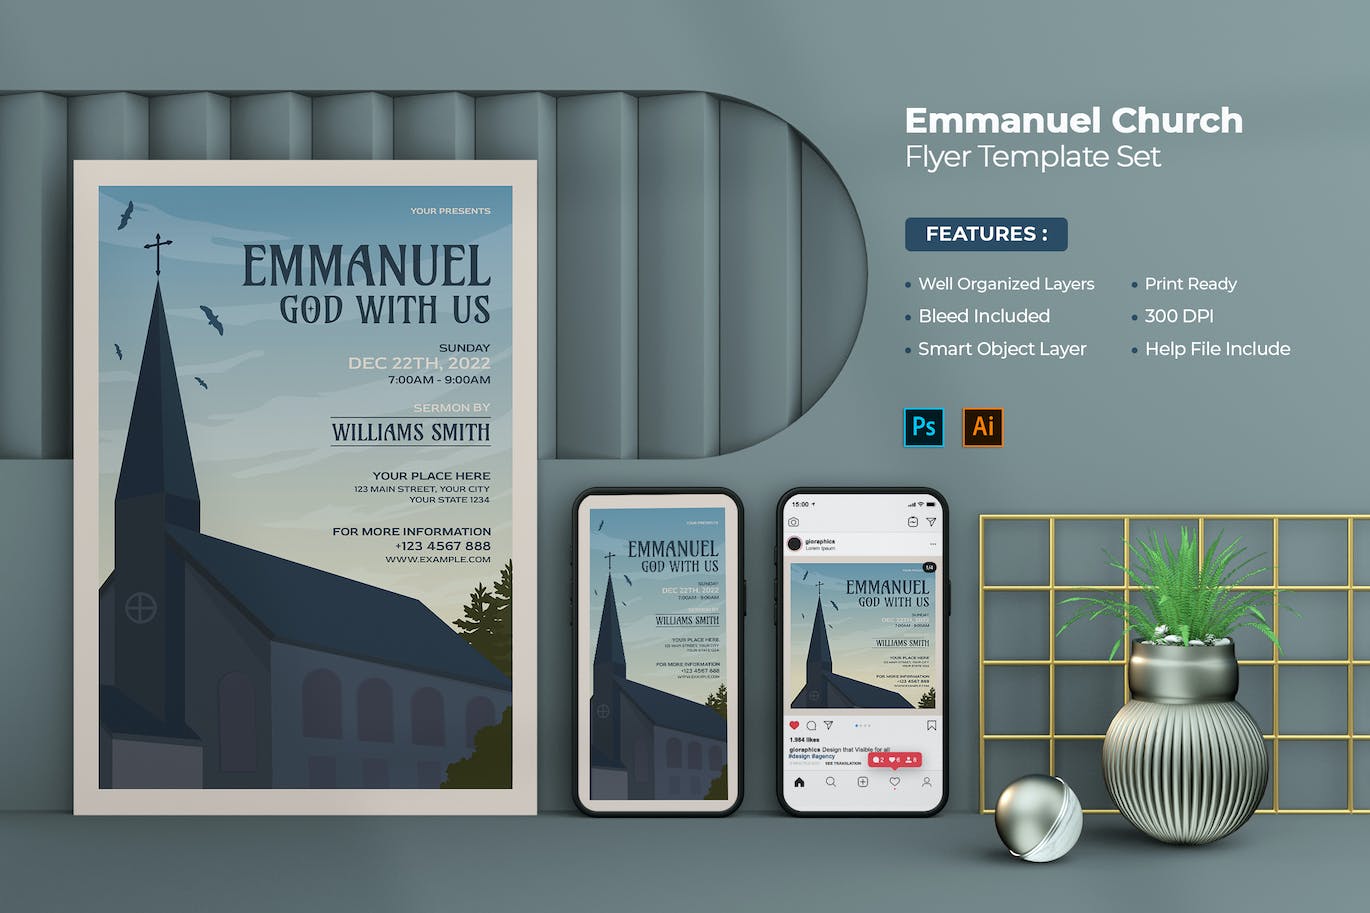 伊曼纽尔教堂活动传单海报设计模板 Emmanuel Church Flyer Template 设计素材 第1张